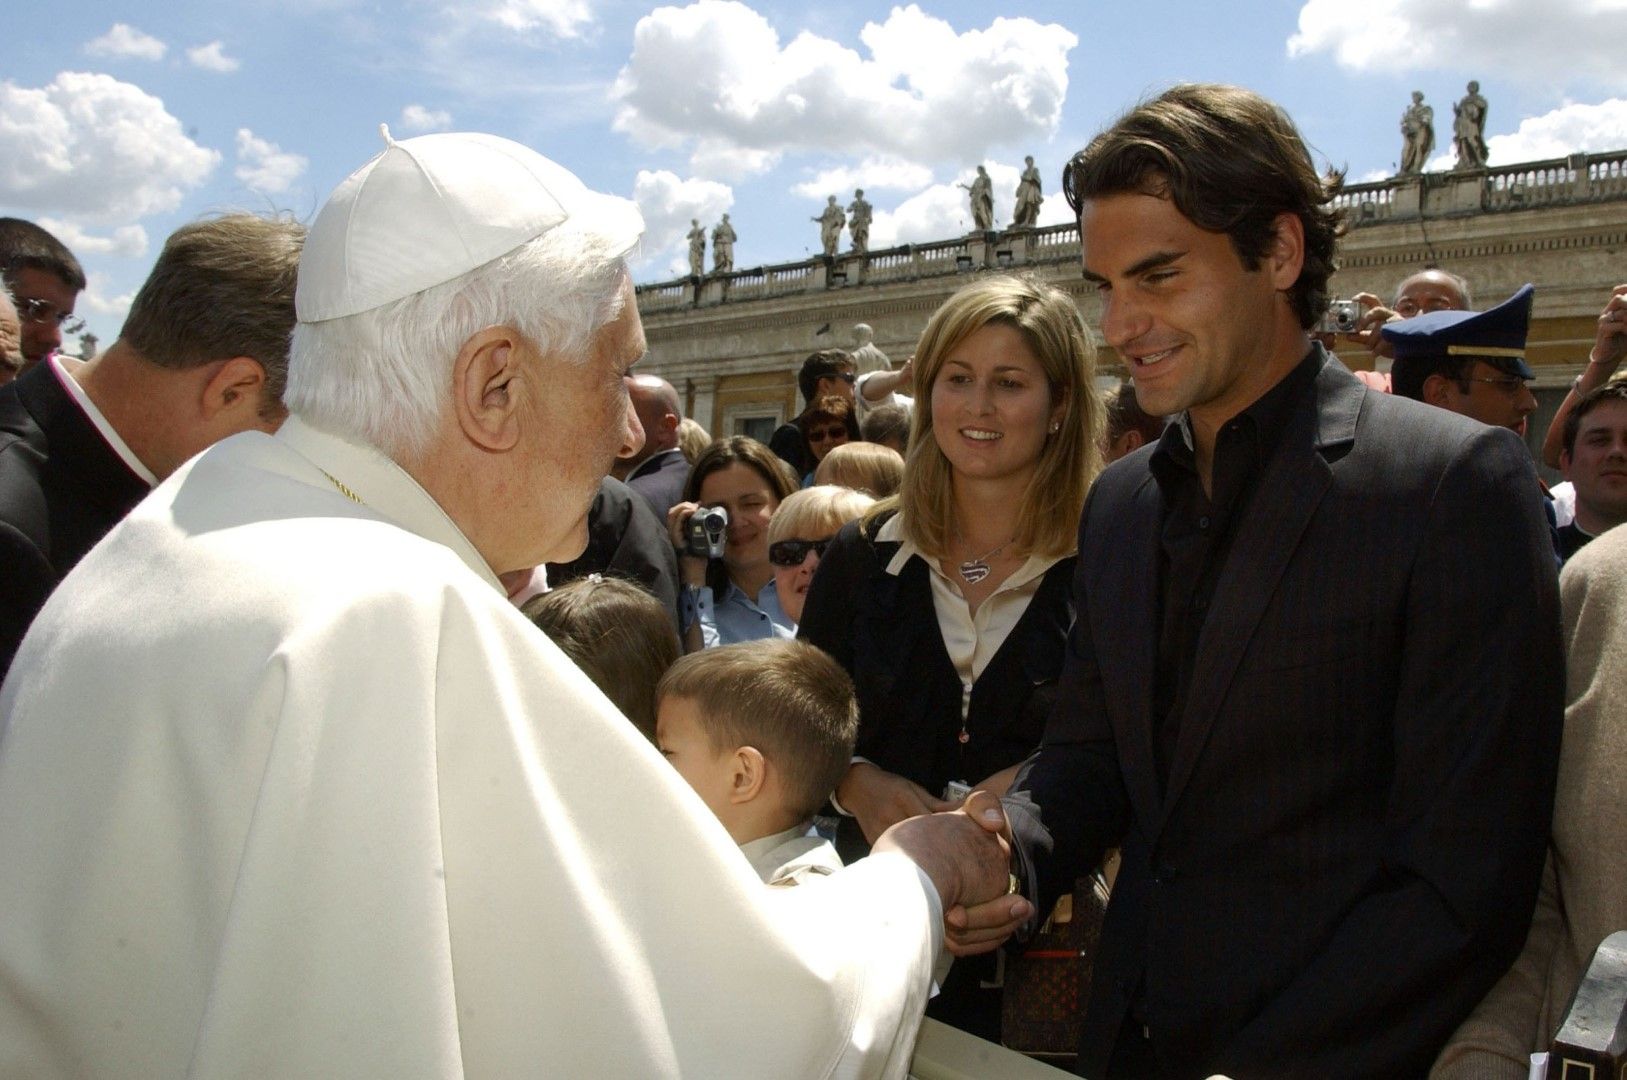 Роджър се срещна с папа Бенедикт при едно от участията си във Вечния град (преди 12 години), но хубавите му моменти в Рим свършват някъде там.